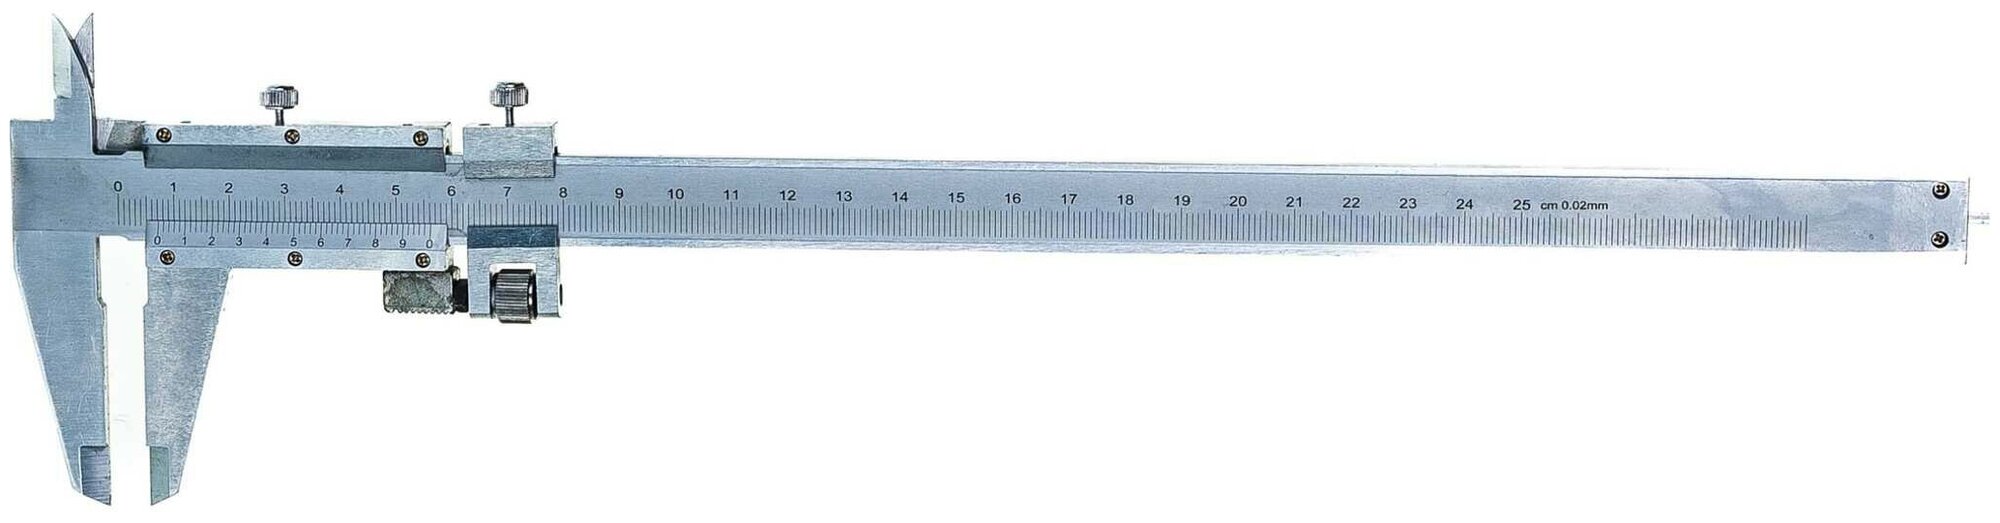 Штангенциркуль, 250 мм, цена деления 0,02 мм, металлический, с глубиномером MATRIX 316335